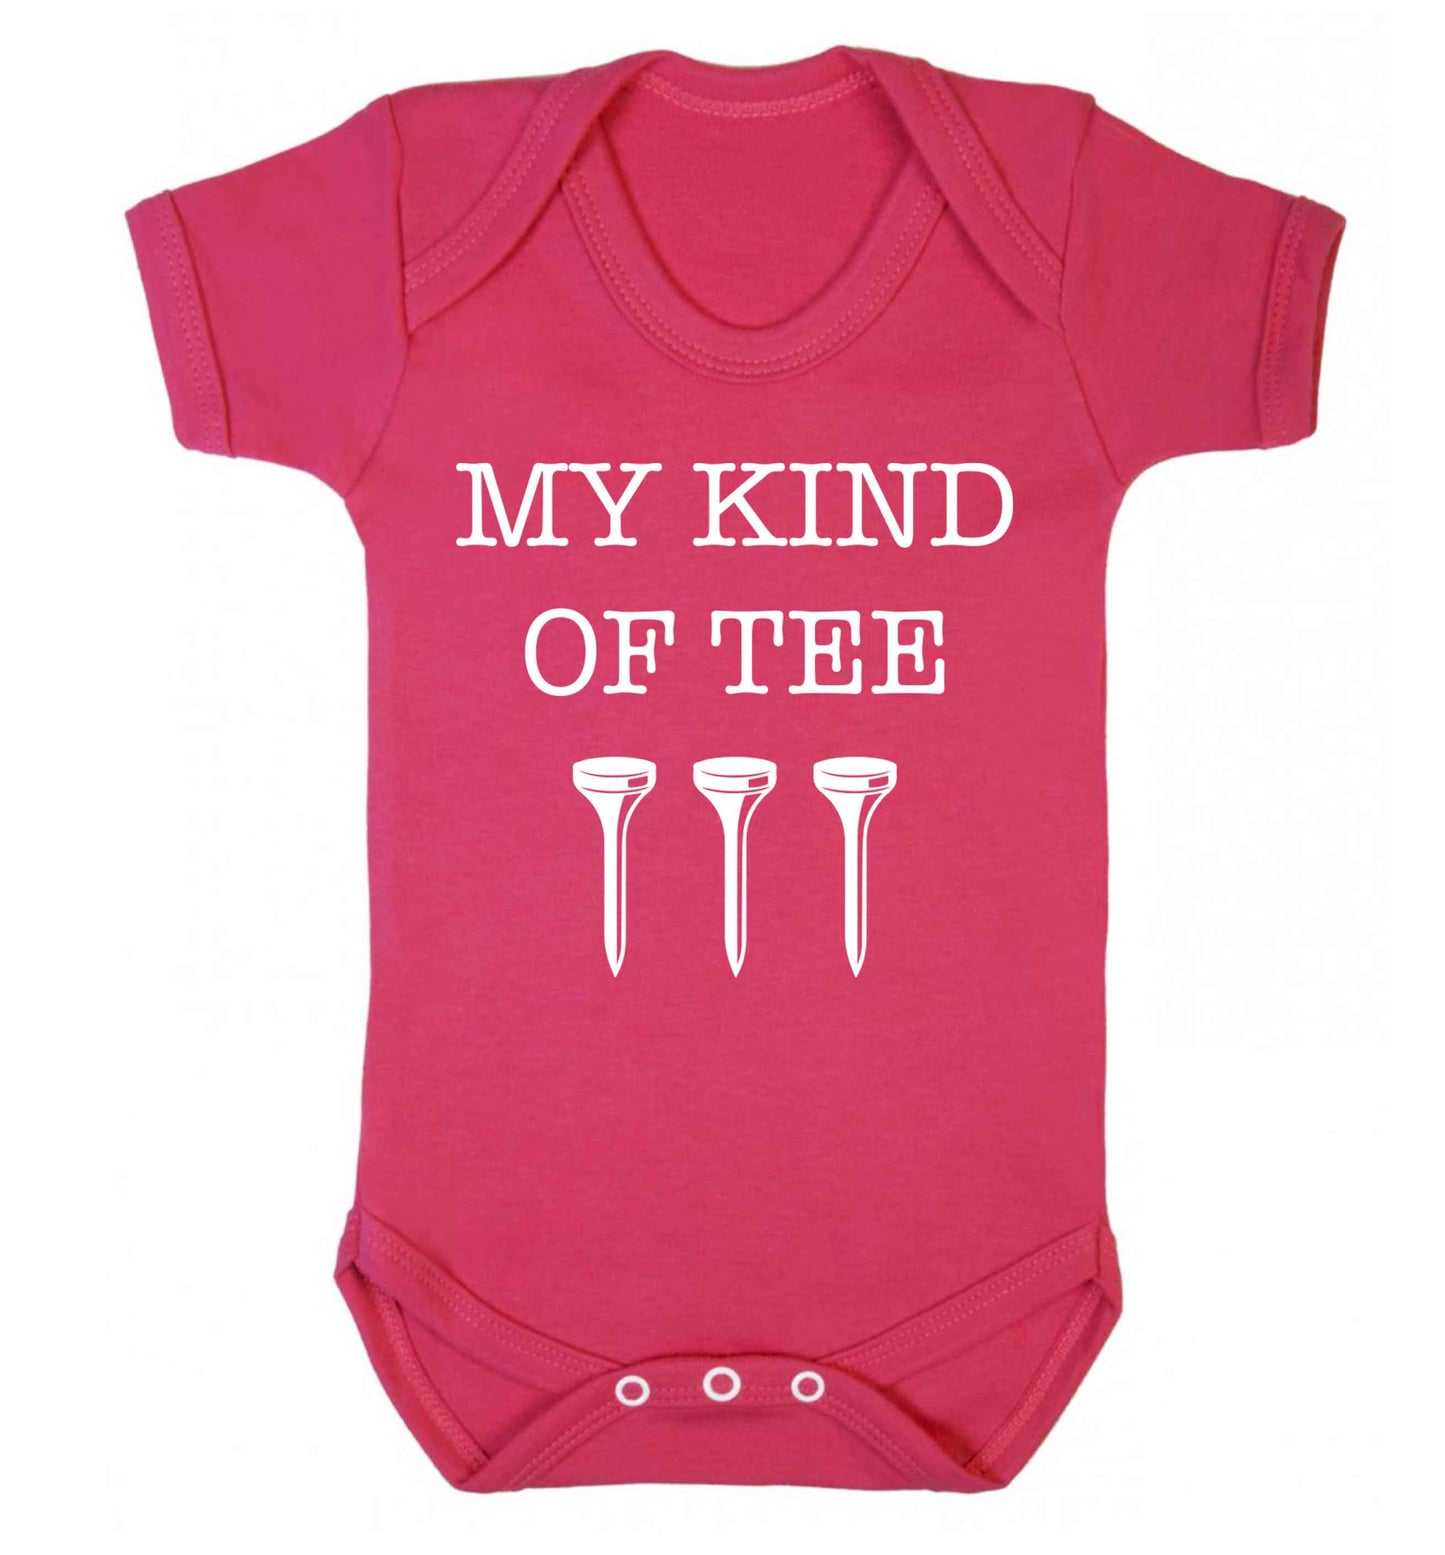 My kind of tee Baby Vest dark pink 18-24 months